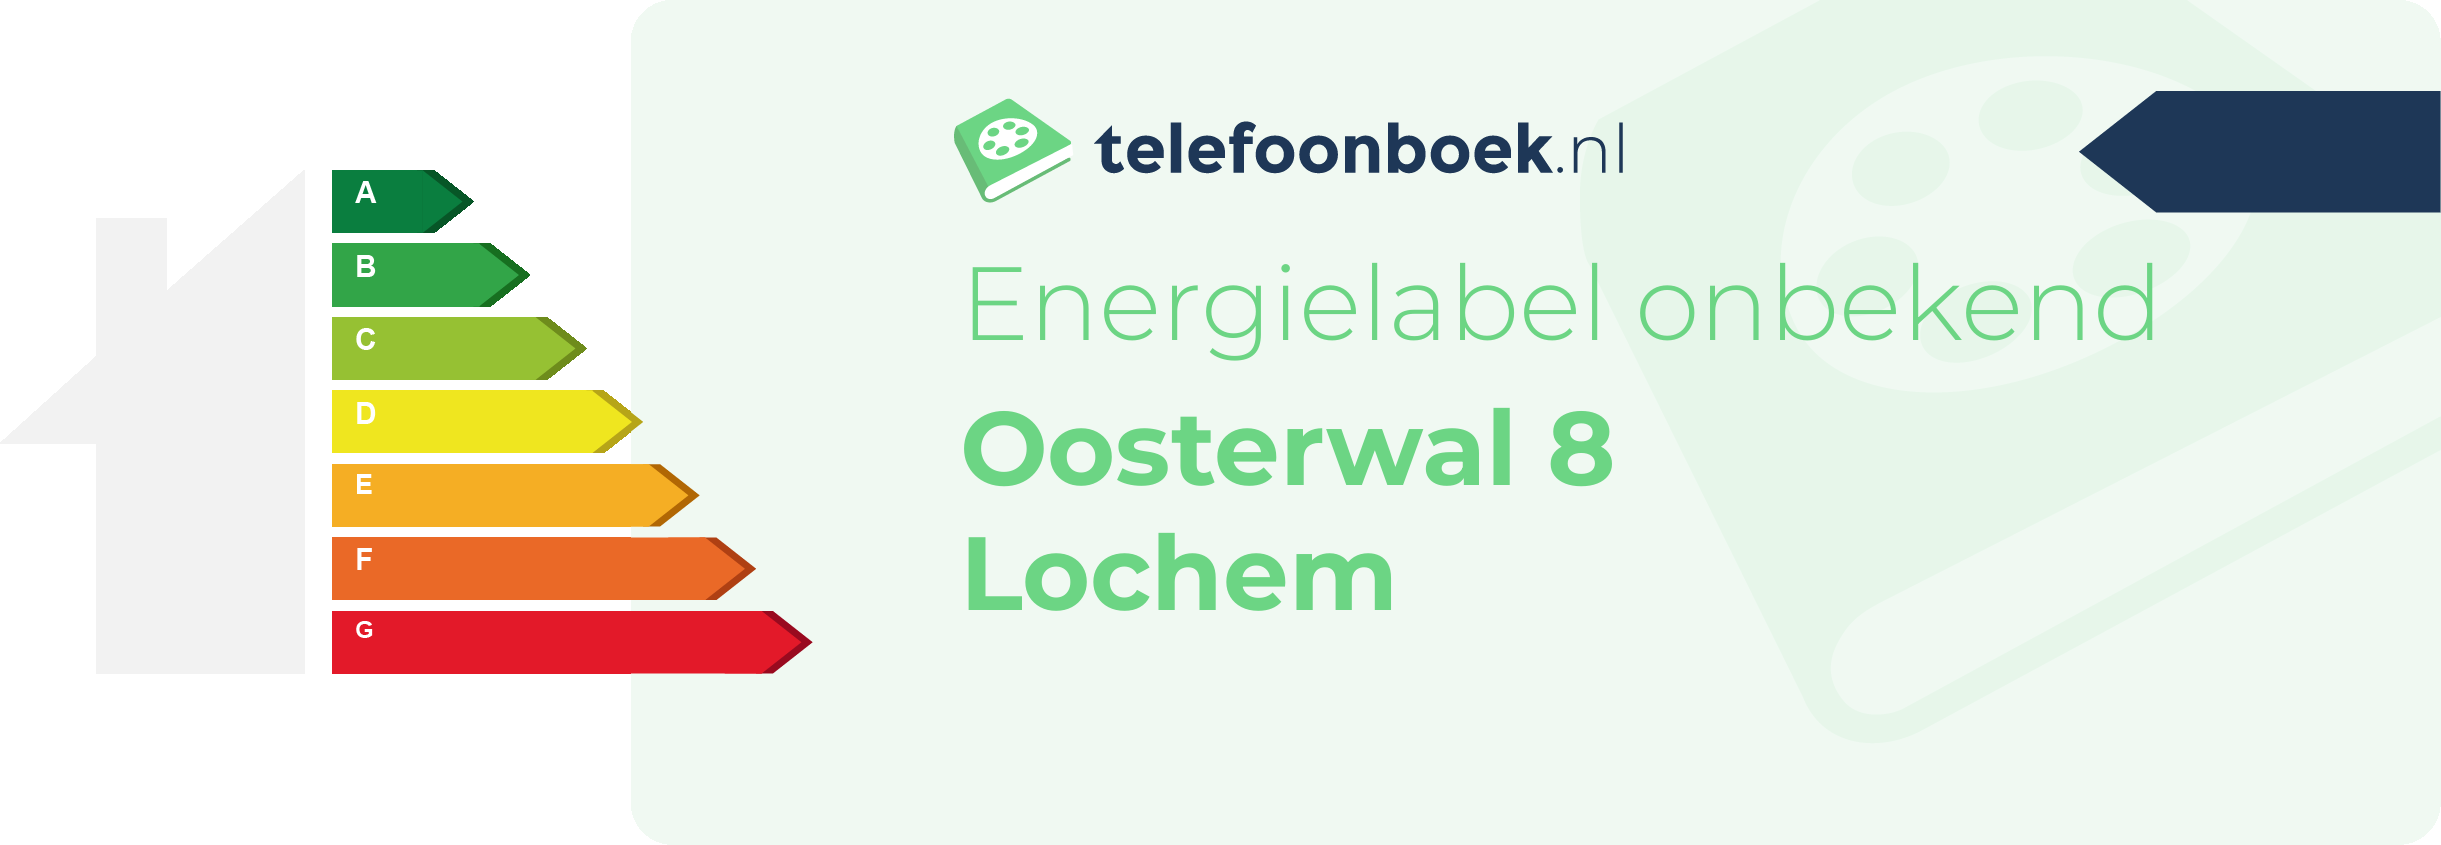 Energielabel Oosterwal 8 Lochem